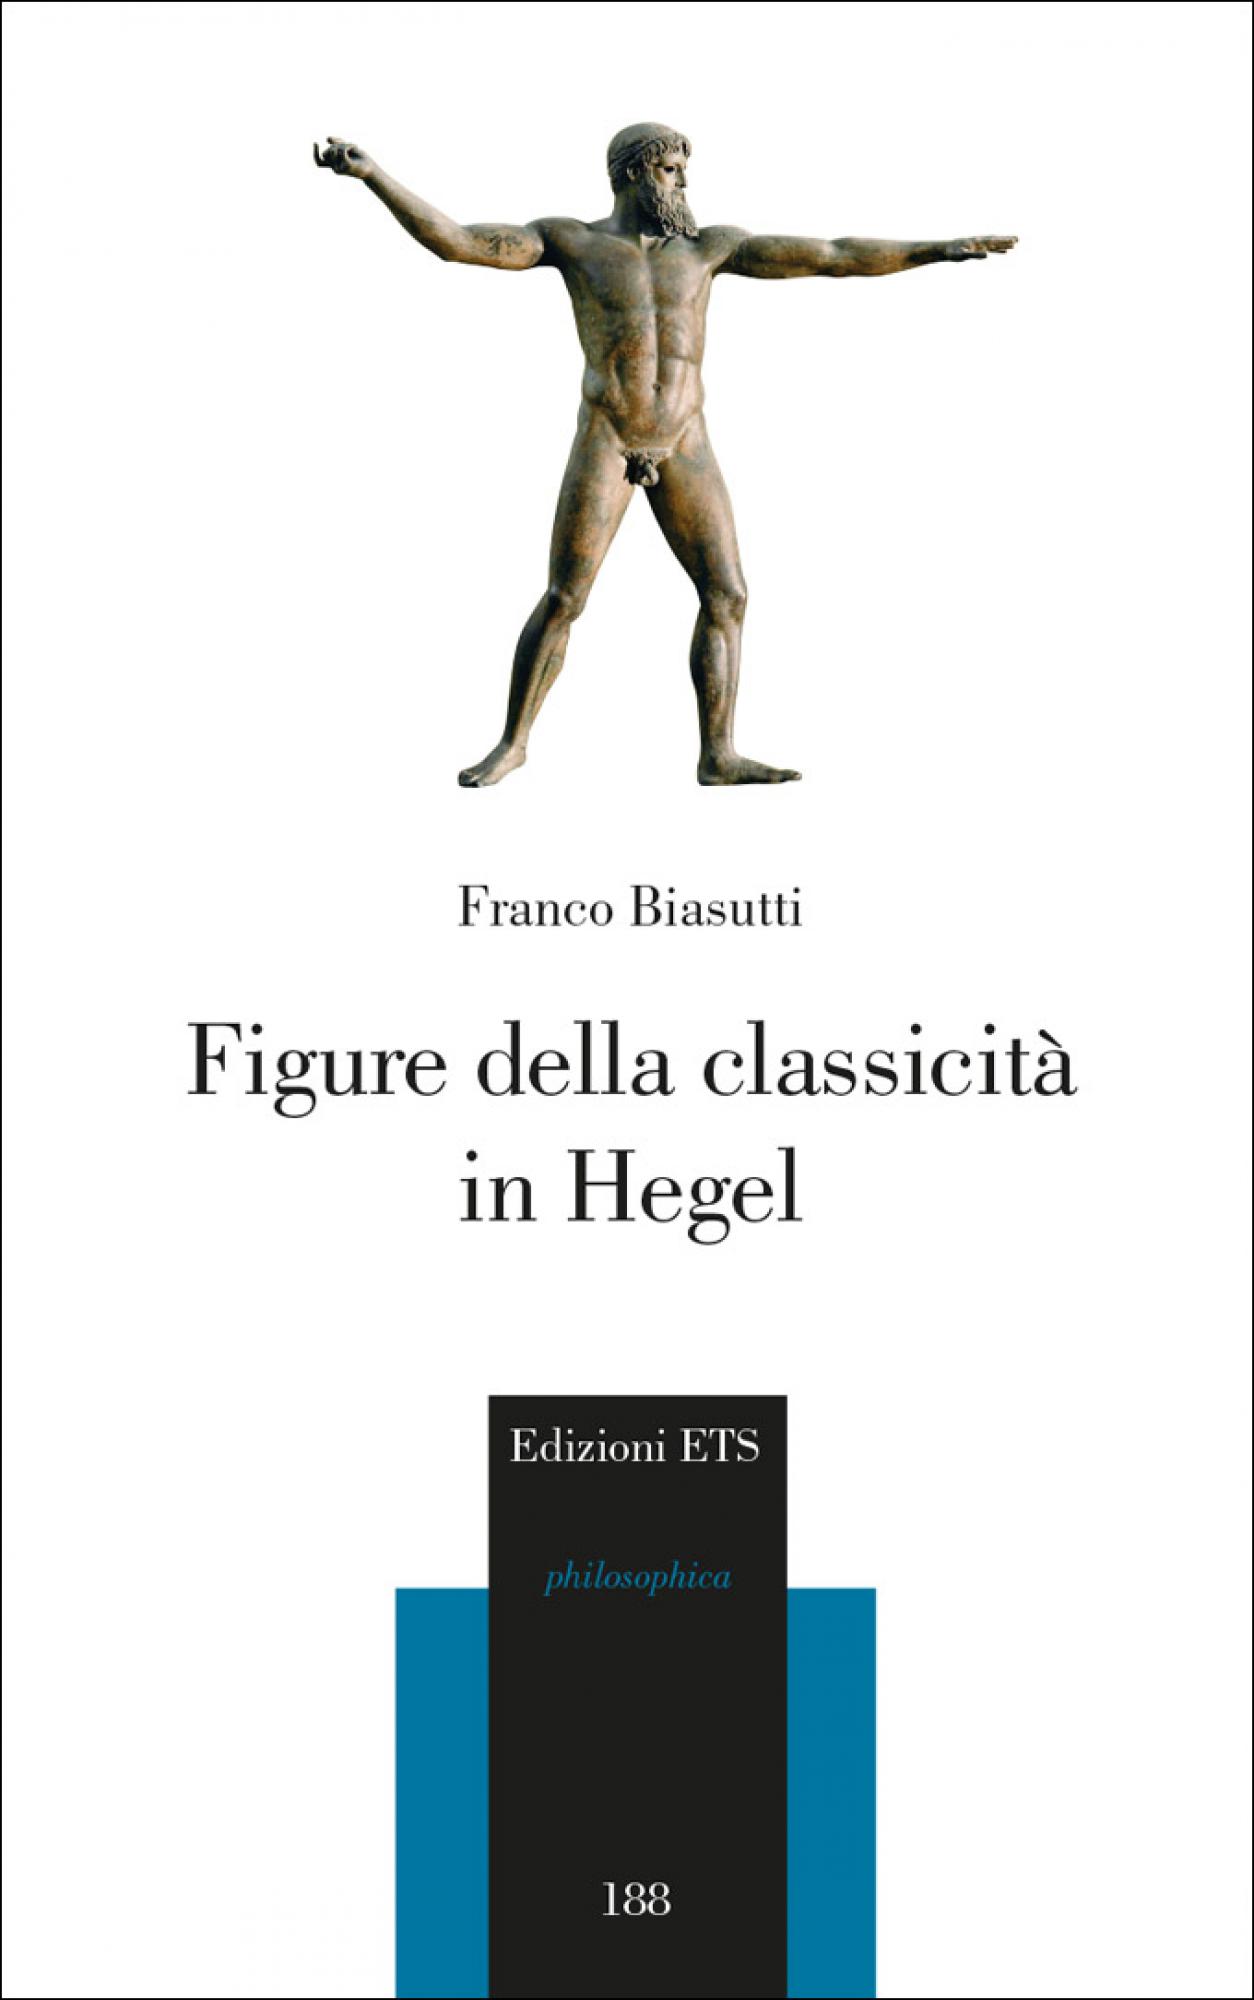 Figure della classicità<br /> in Hegel